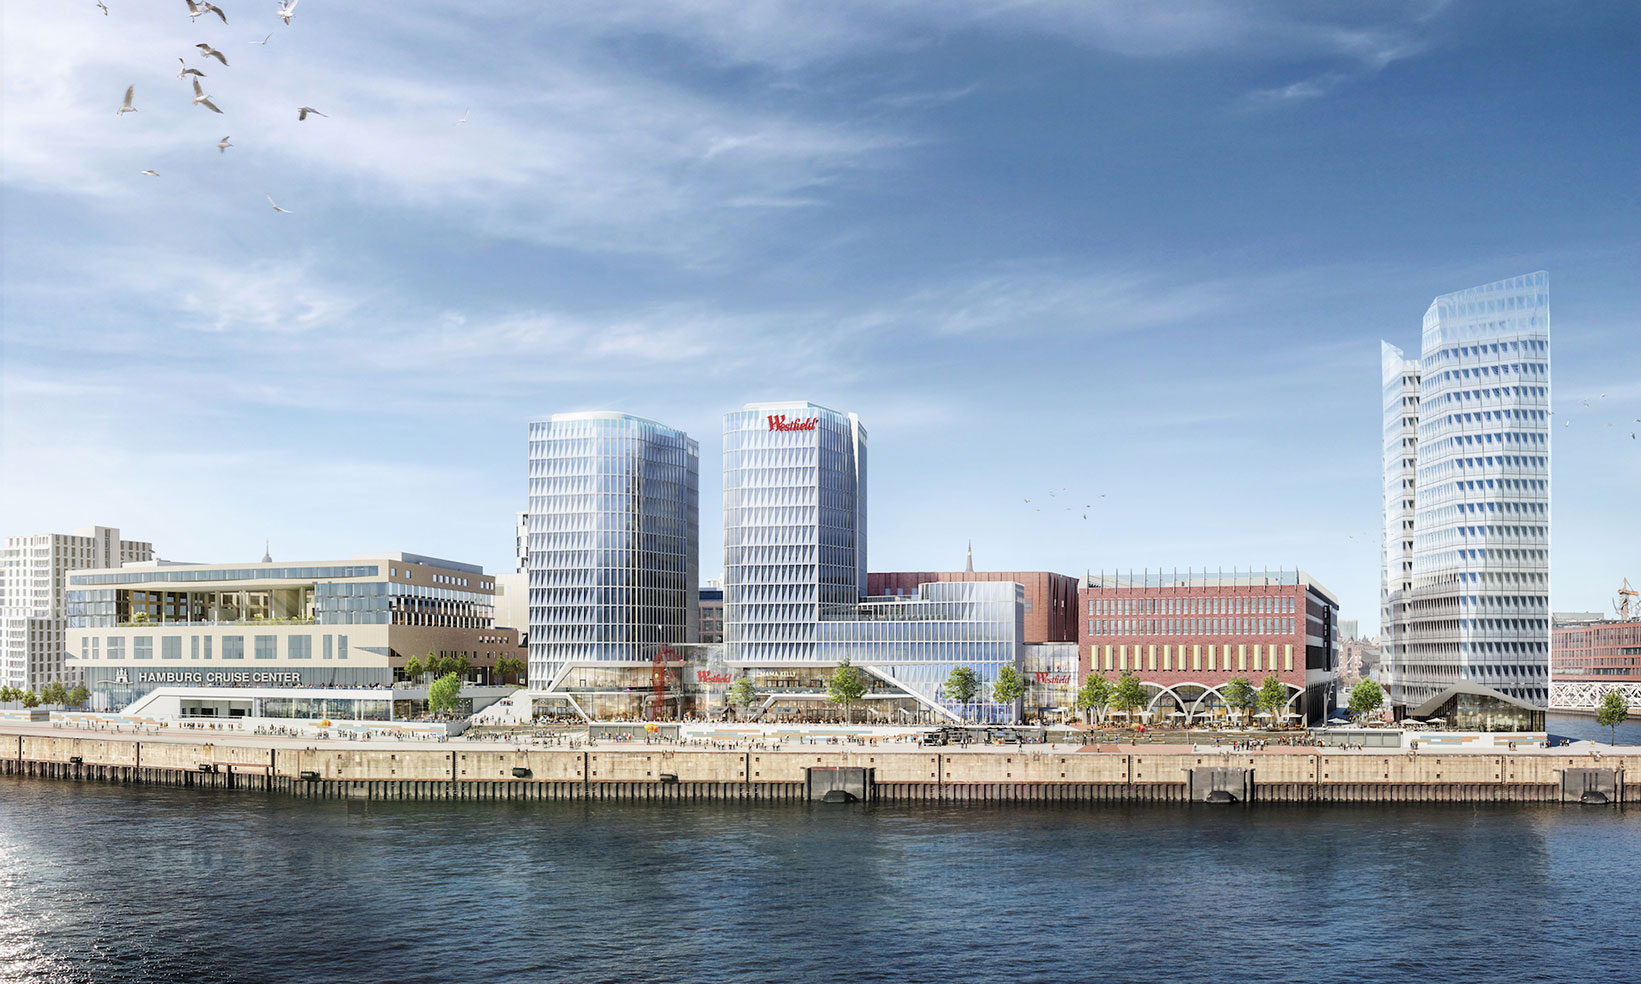 Das Westfield Hamburg-Überseequartier ist ein neues Projekt moderner Stadtentwicklung